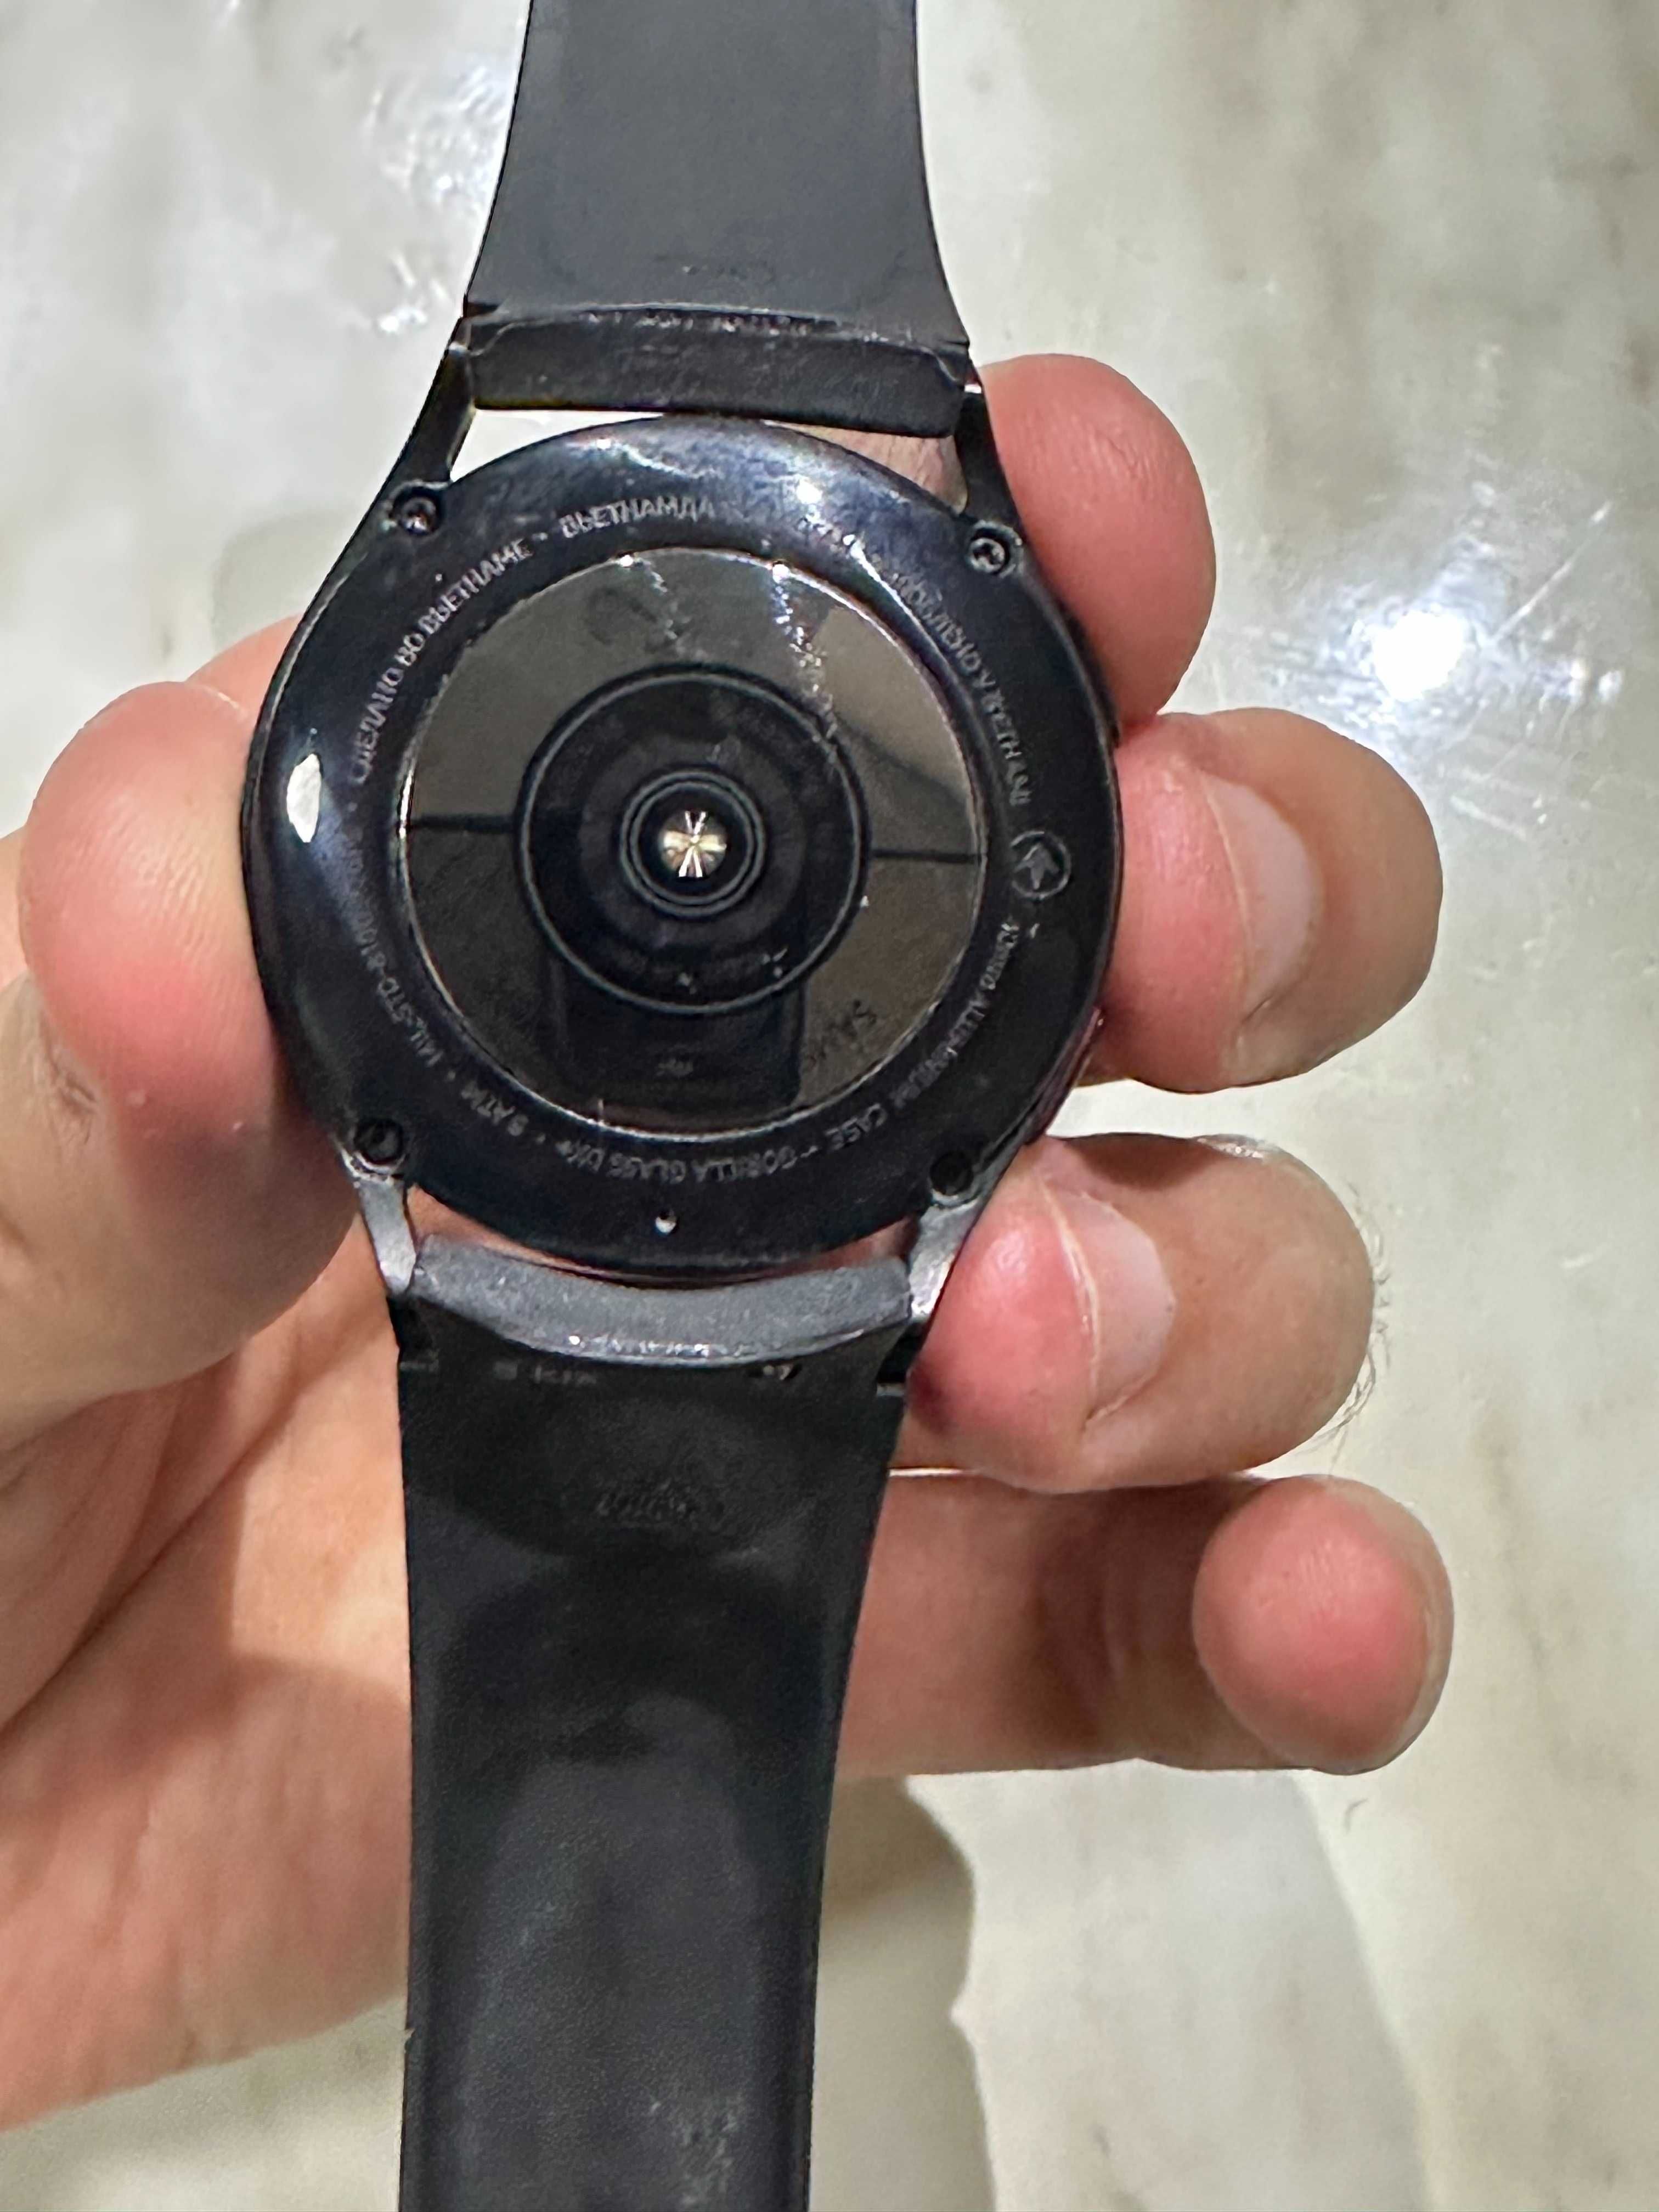 СРОЧНО!! Продам свои Galaxy Watch 4 40mm. Полный комплект